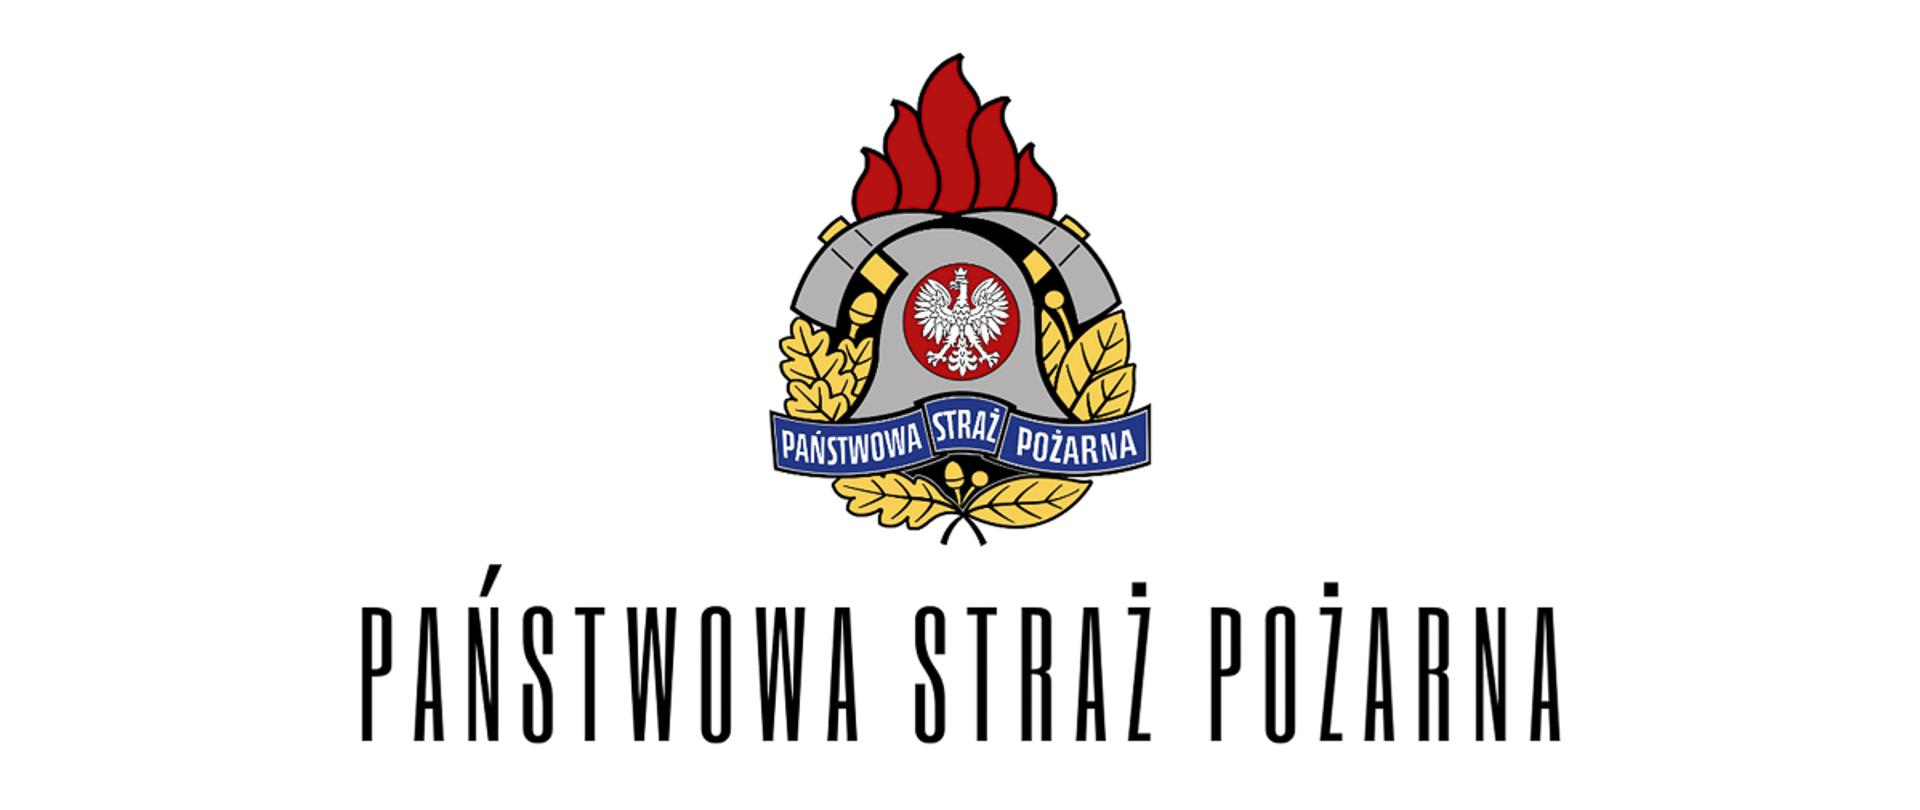 Logo Państwowej Straży Pożarnej z napisem "Państwowa Straż Pożarna"